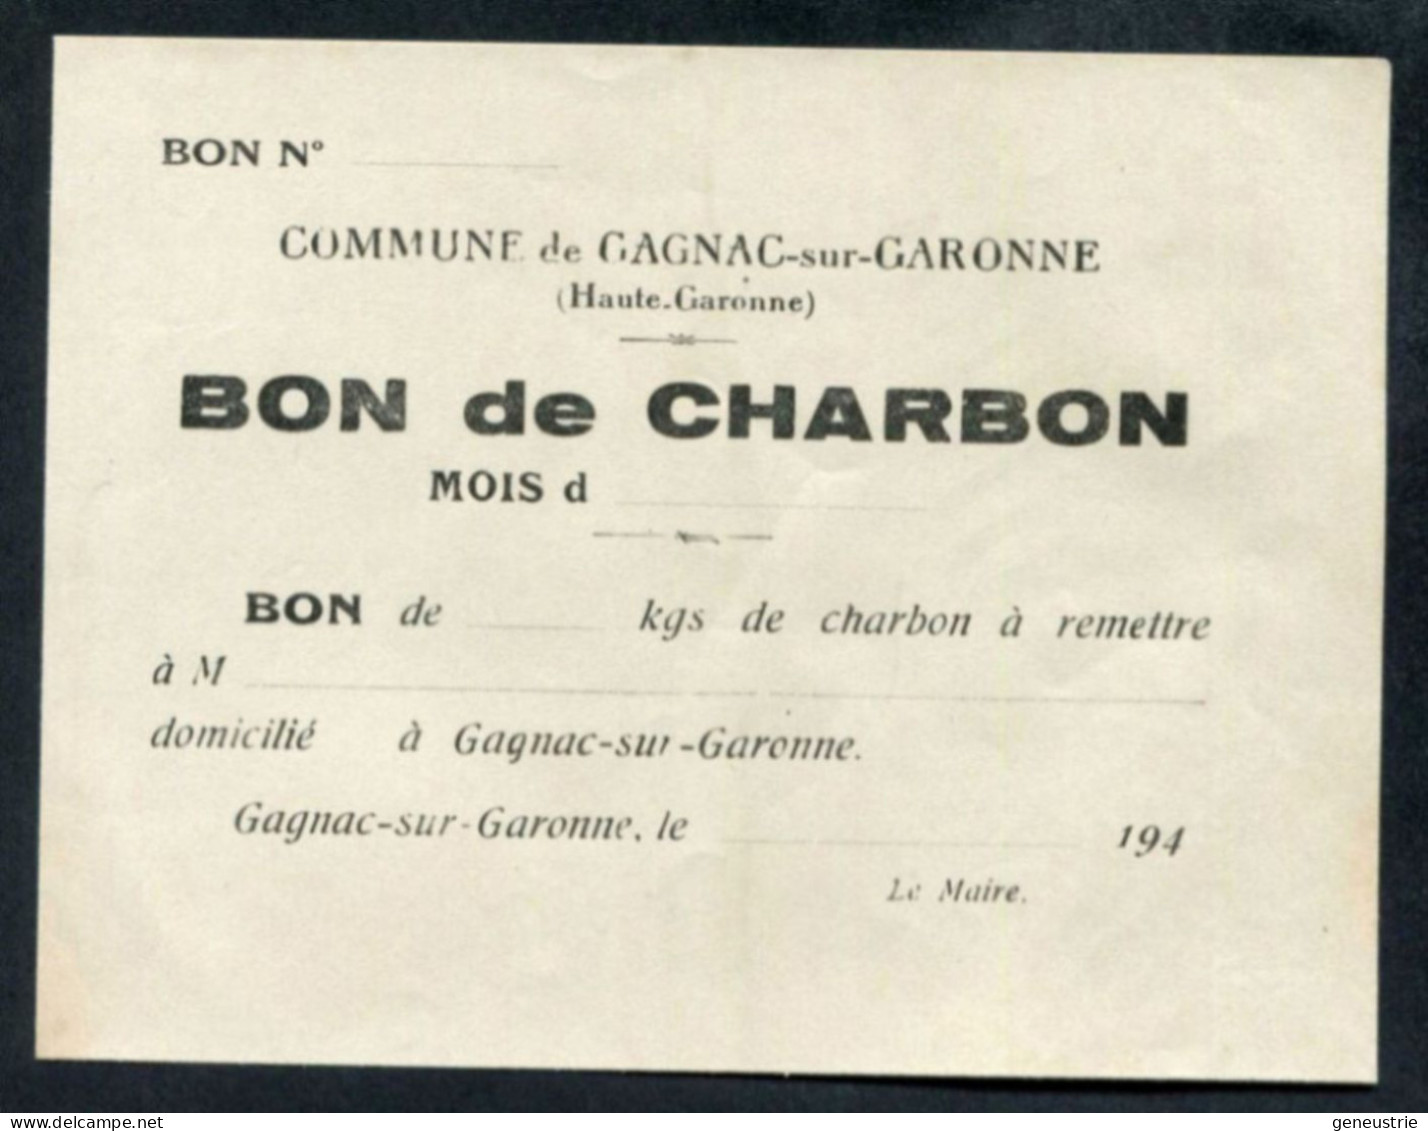 WW2 Billet De Nécessité "Bon De ... Kg De Charbon - Gagnac-sur-Garonne (Toulouse) Années 40" WWII - Bonos